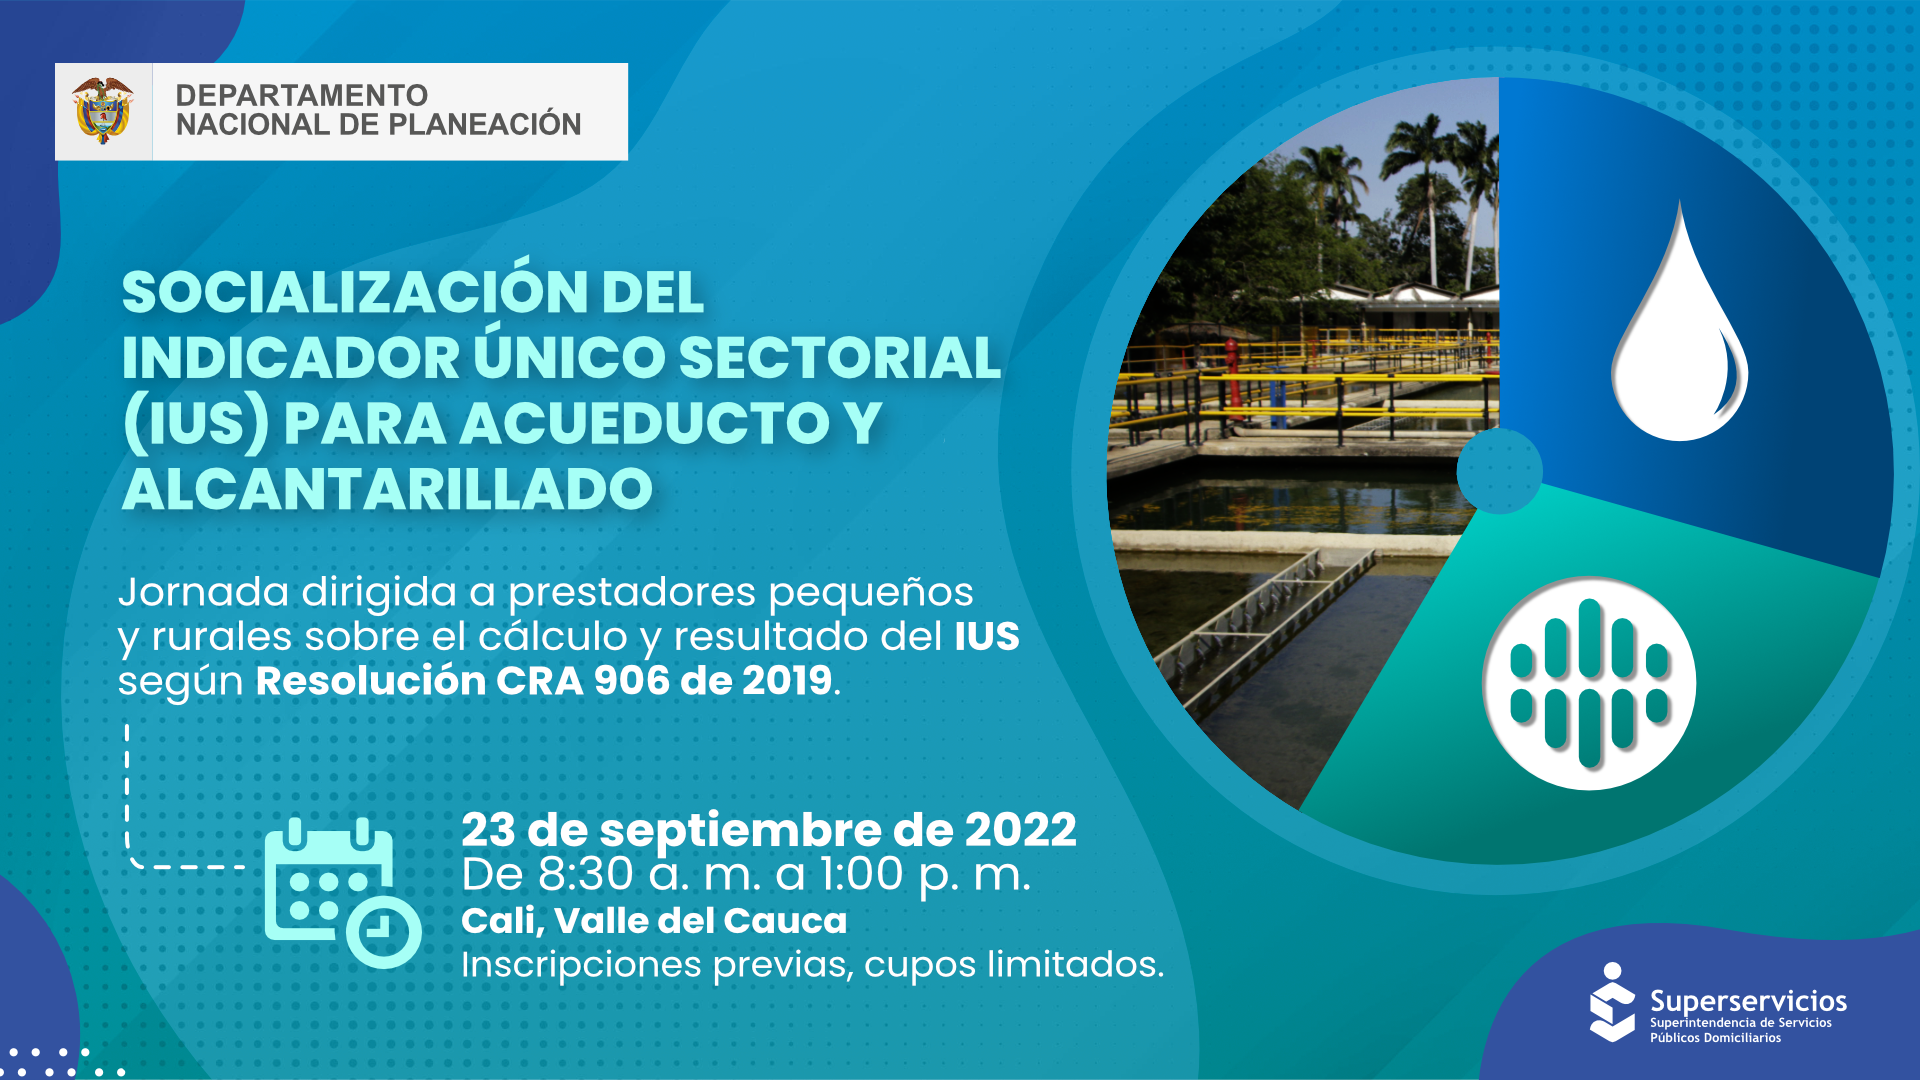 Socialización del Indicador Único Sectorial IUS para acueducto y alcantarillado, en Cali, Valle del Cauca
